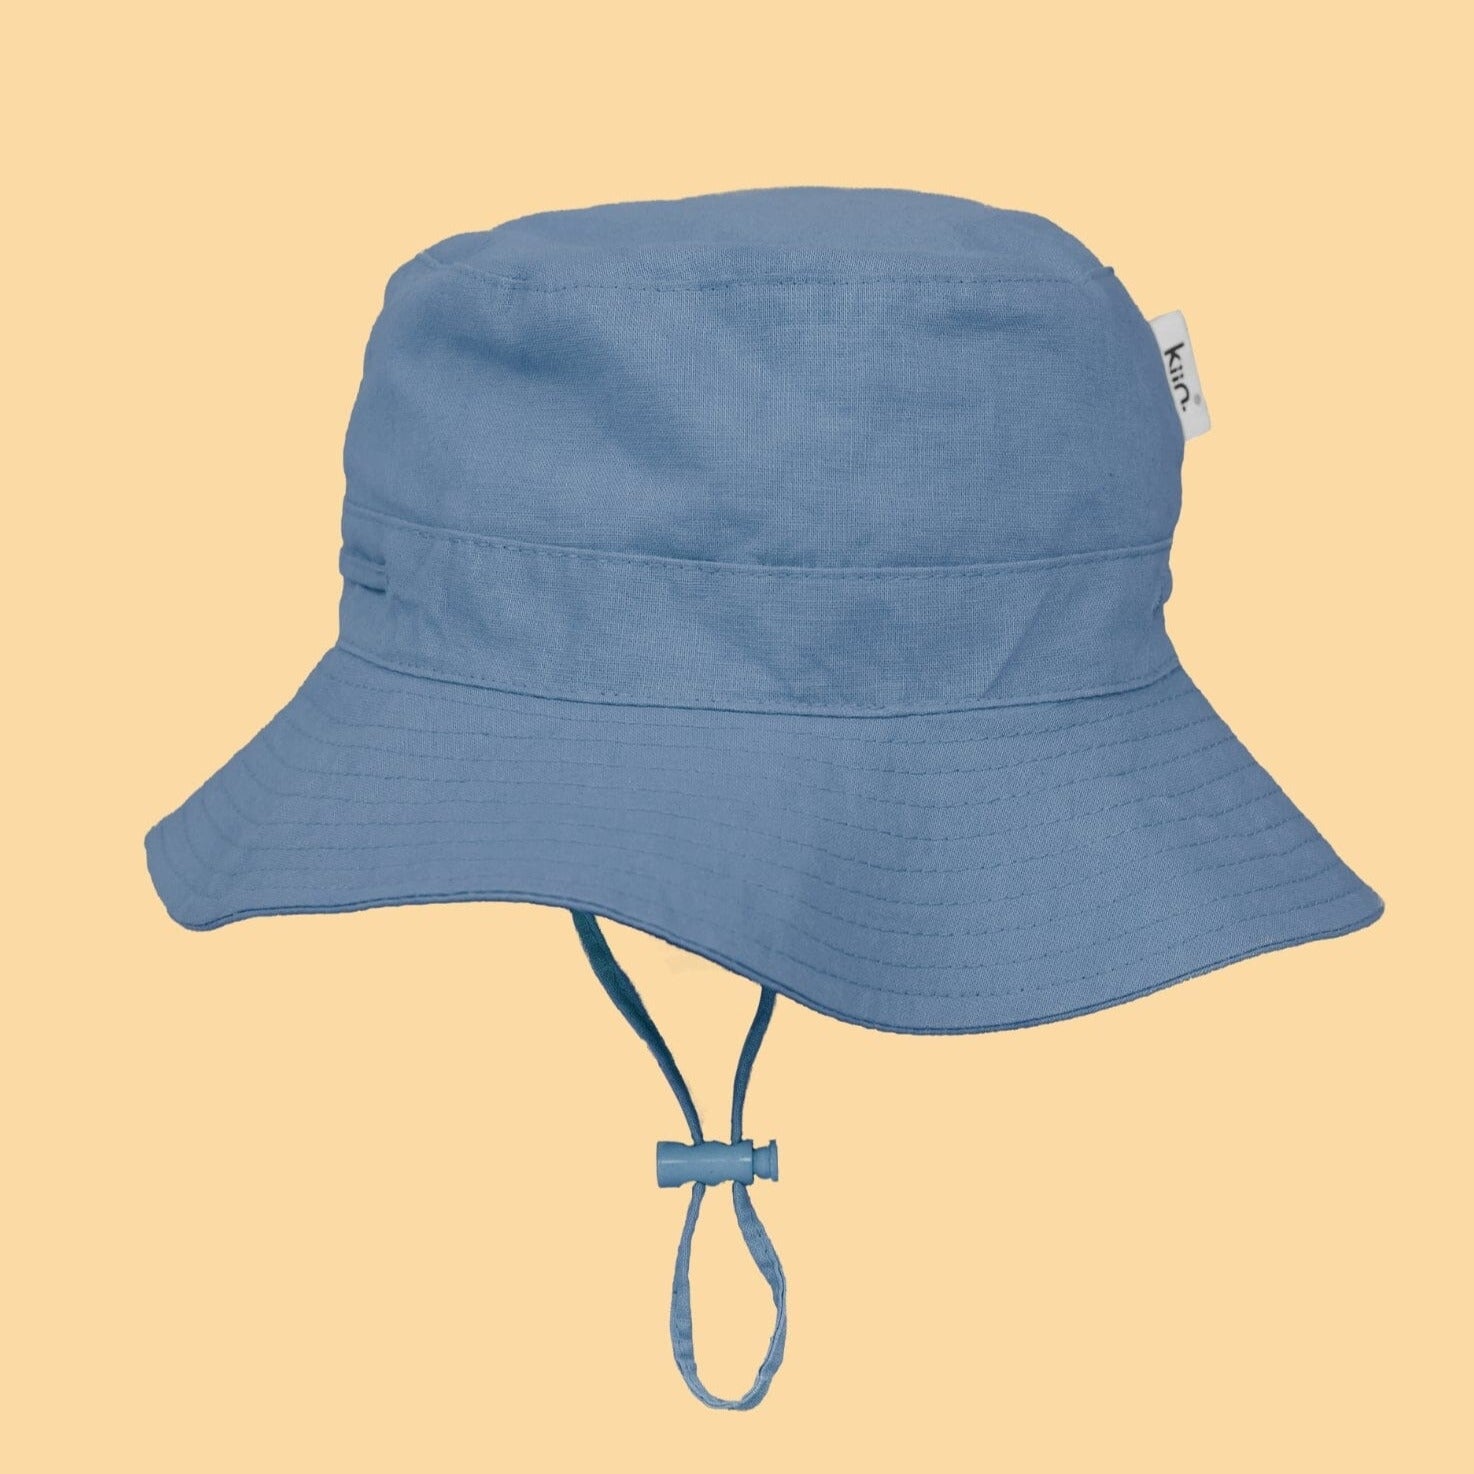 KIIN COTTON SUN HAT: BLUE SHADOW